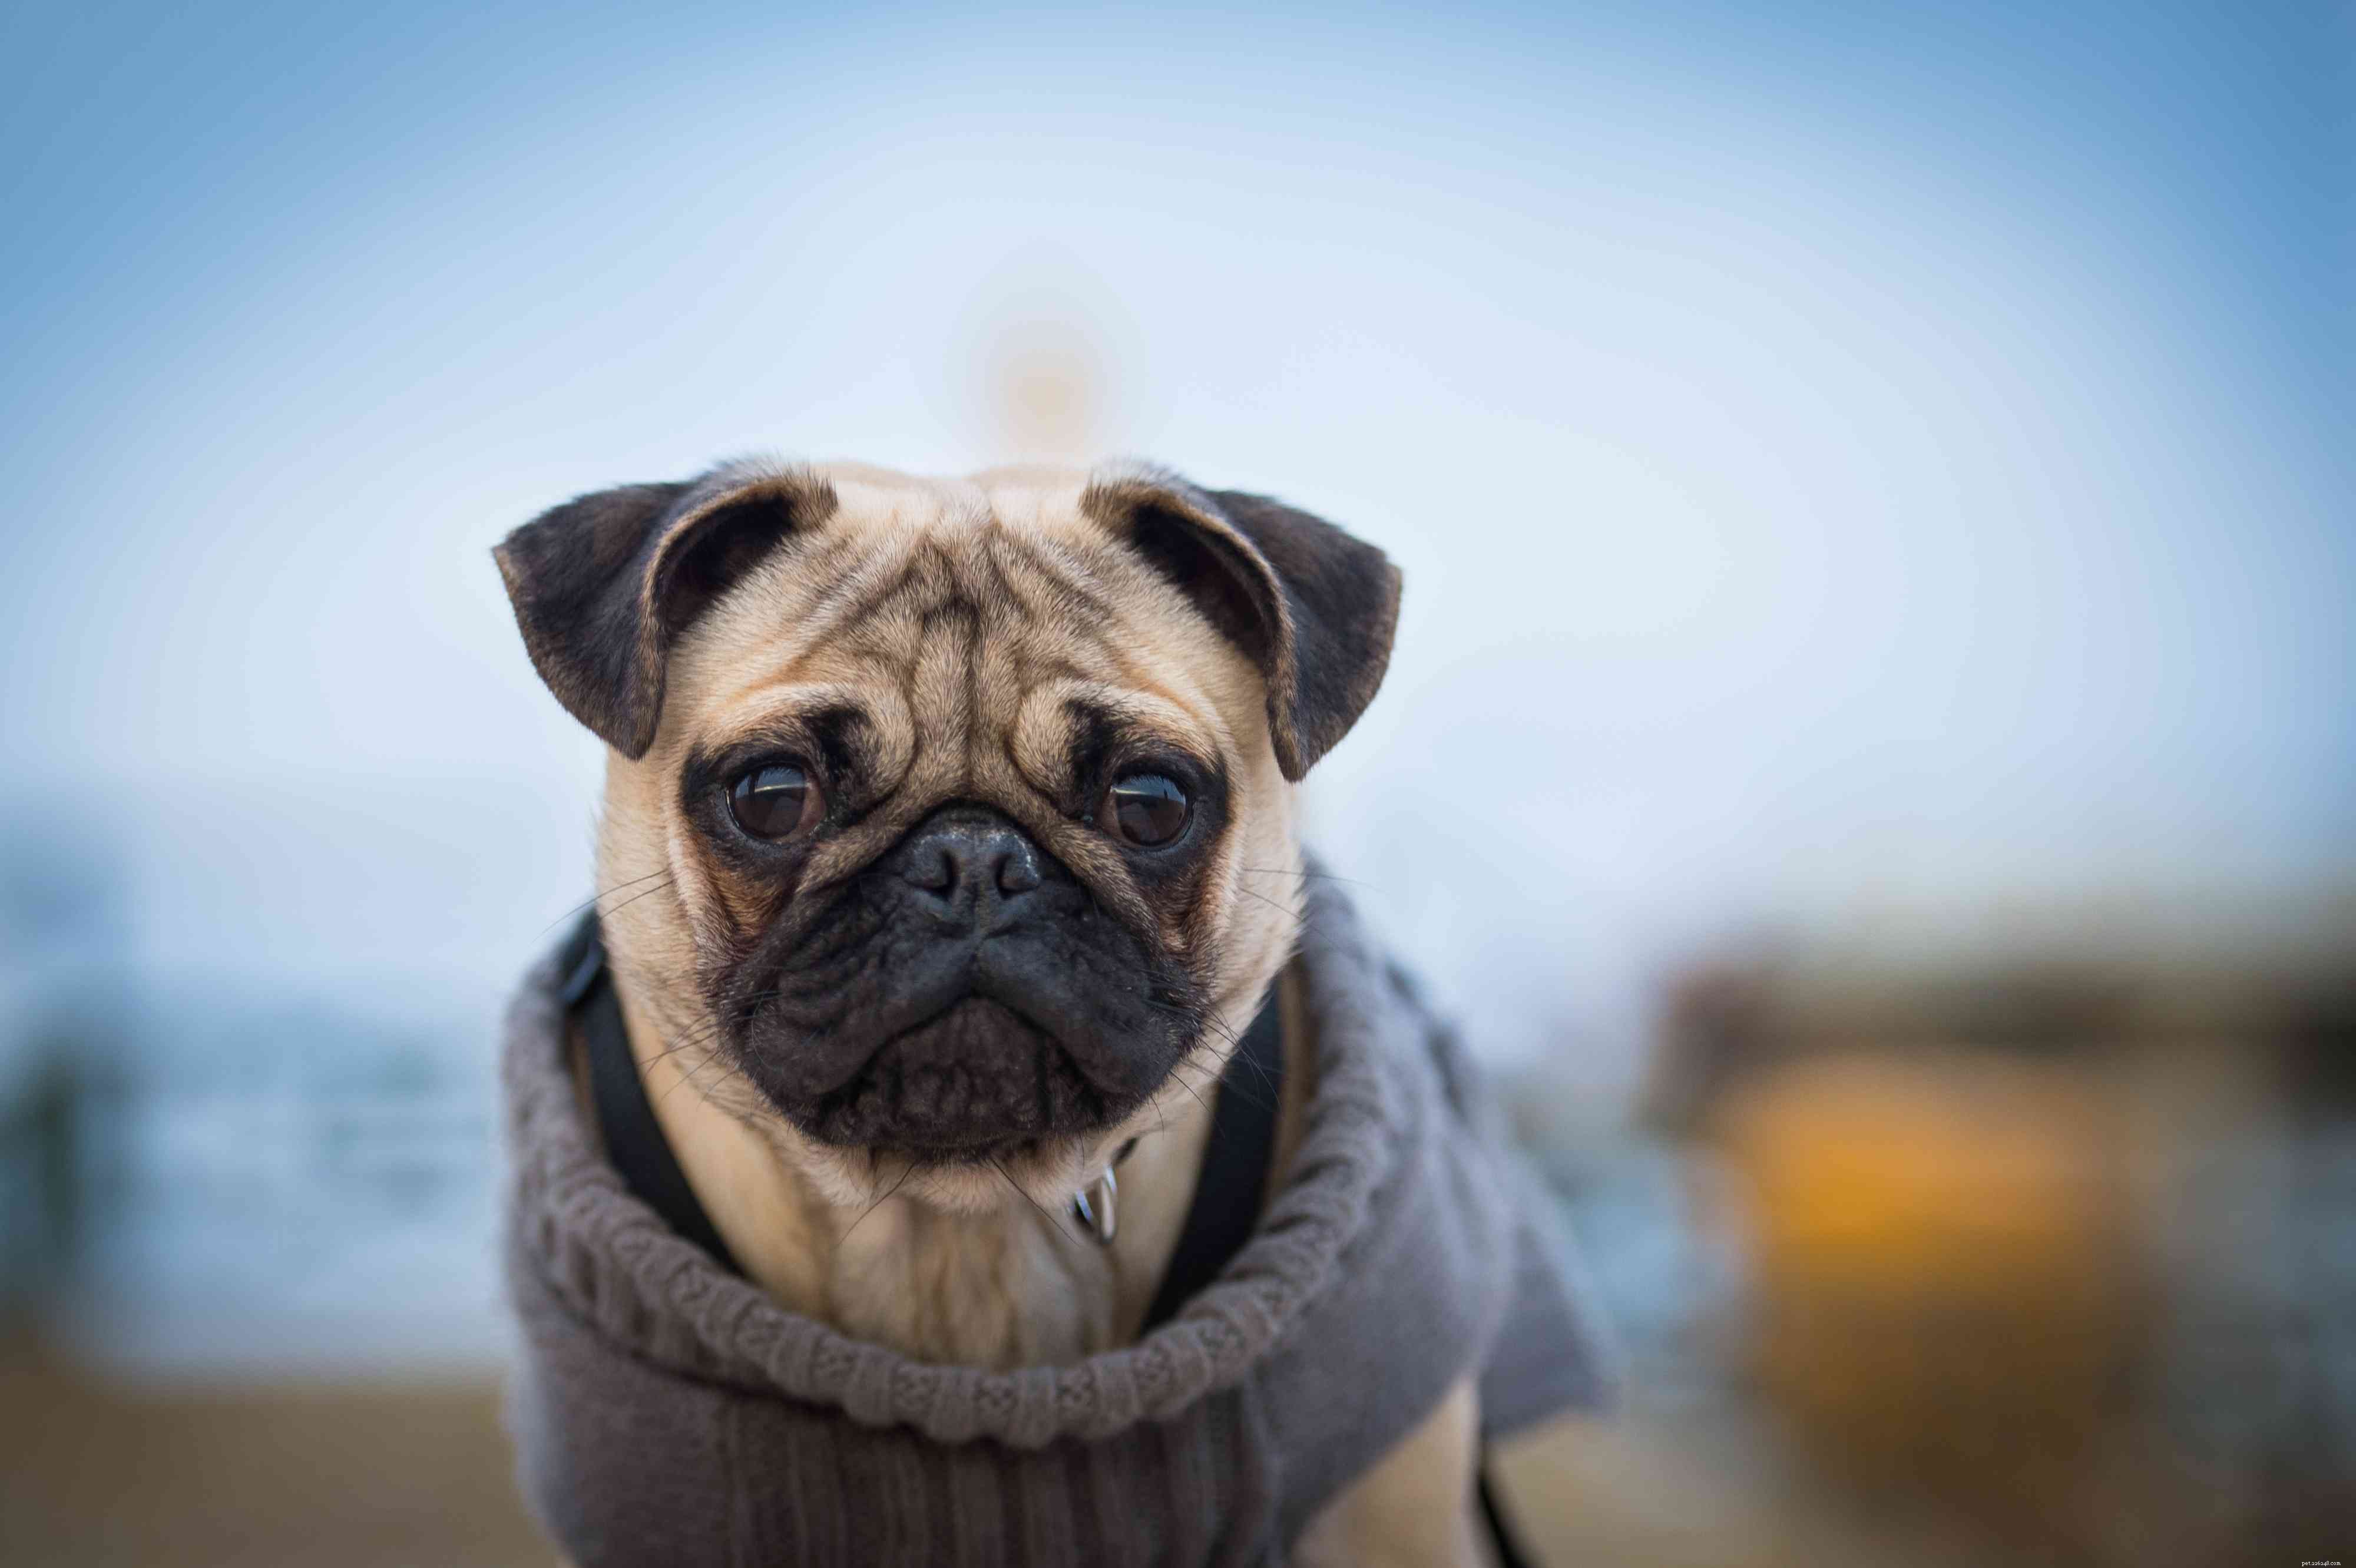 Měli byste svému psovi v chladném počasí obléci svetr?